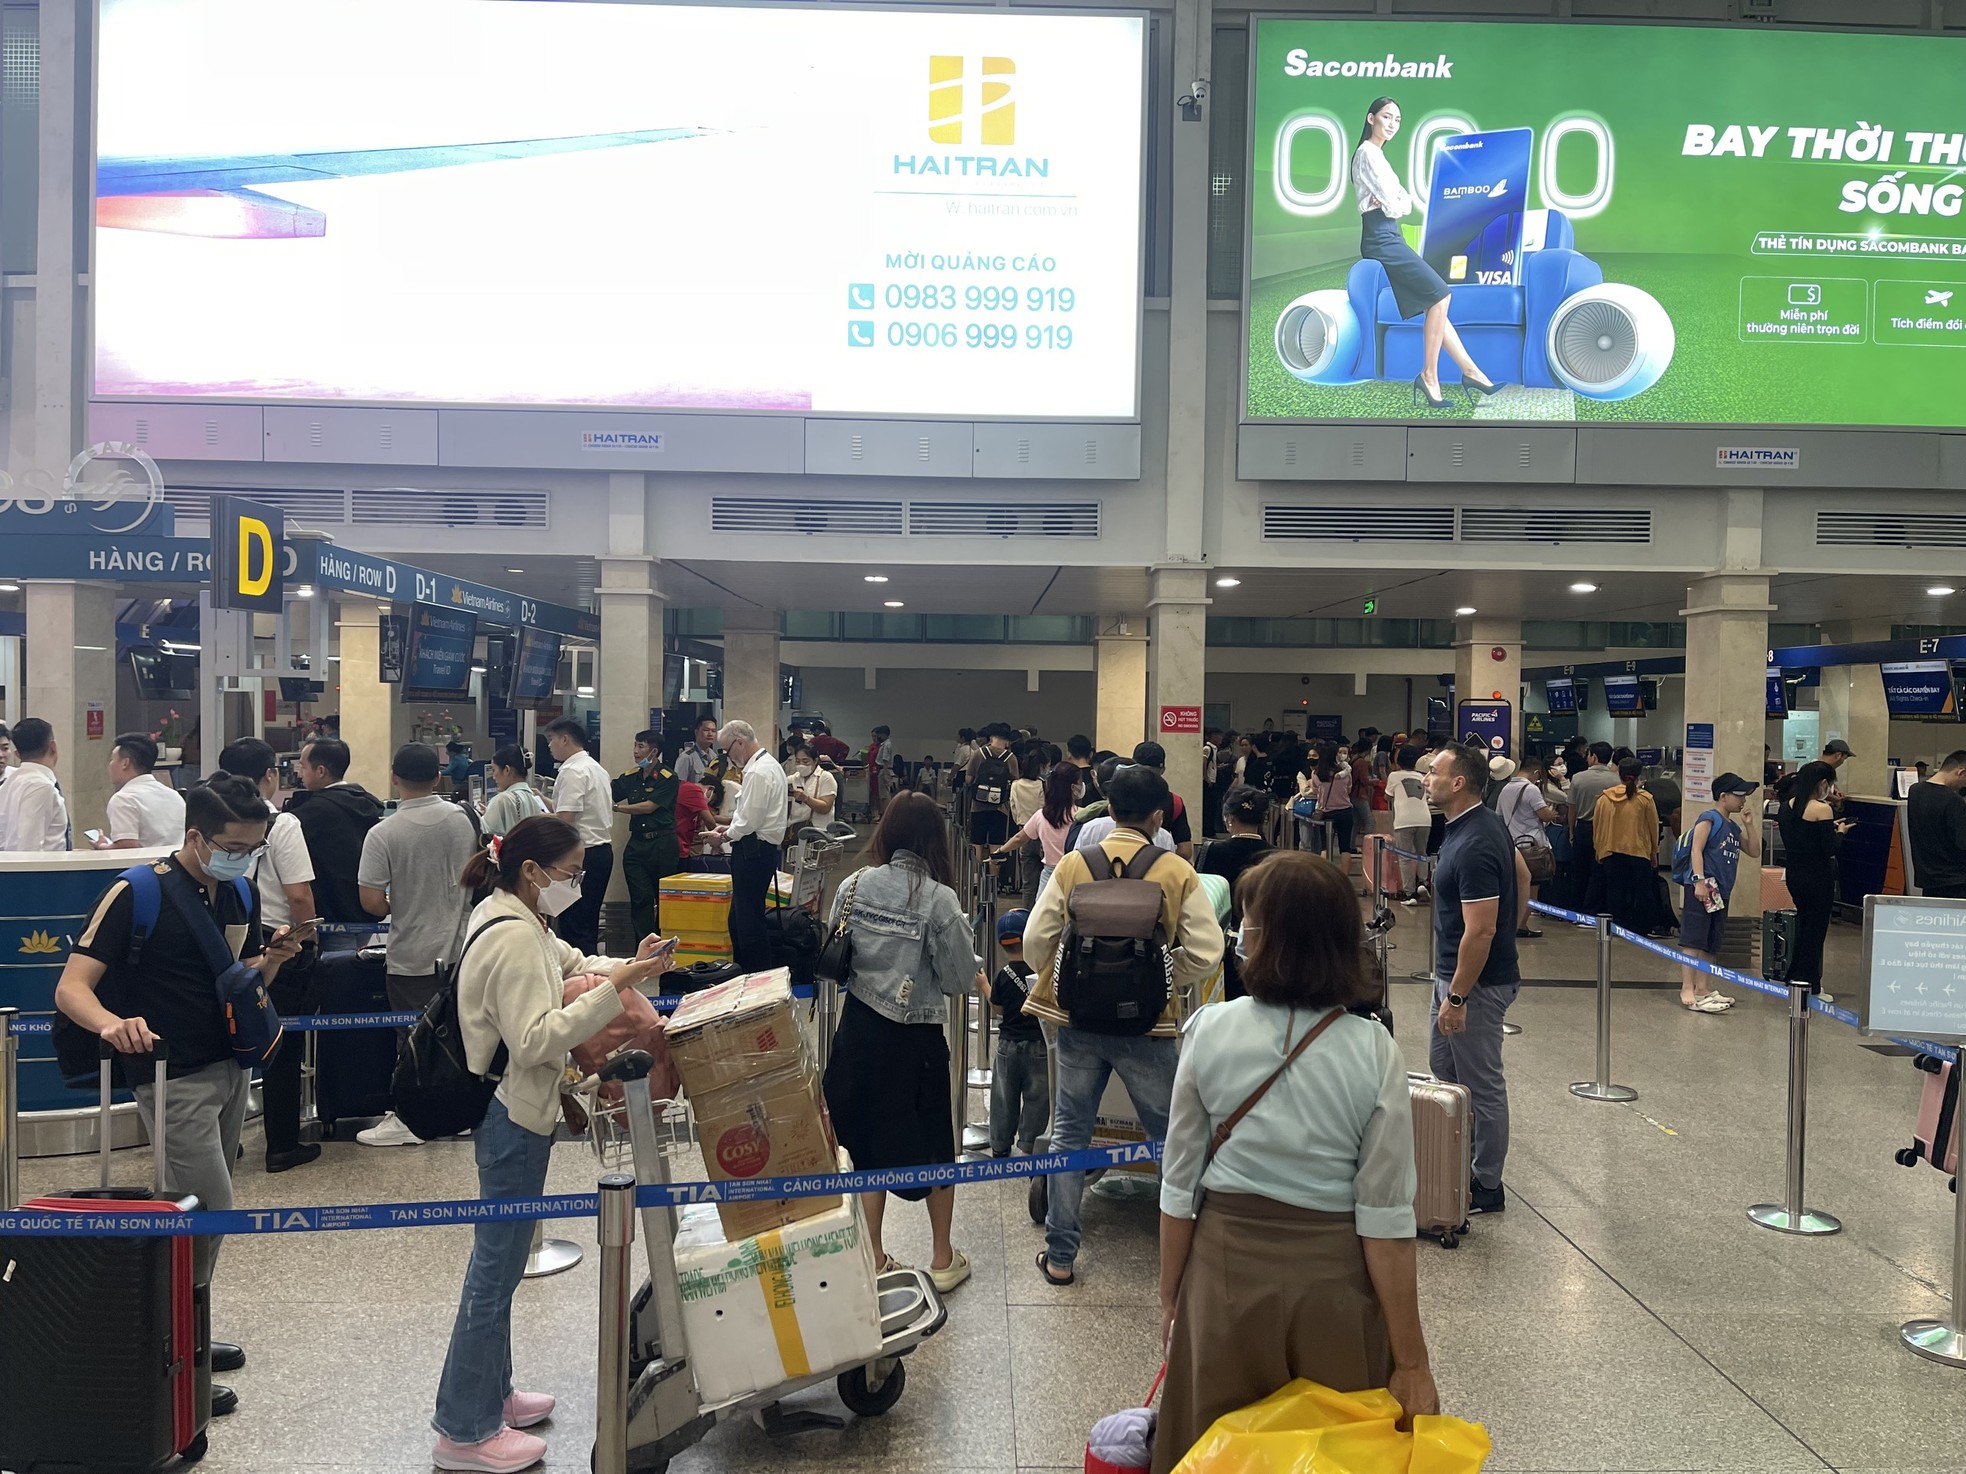 Bất ngờ hình ảnh Sân bay Tân Sơn Nhất, cửa ngõ về miền Tây ngày 26 Tết - Ảnh 8.